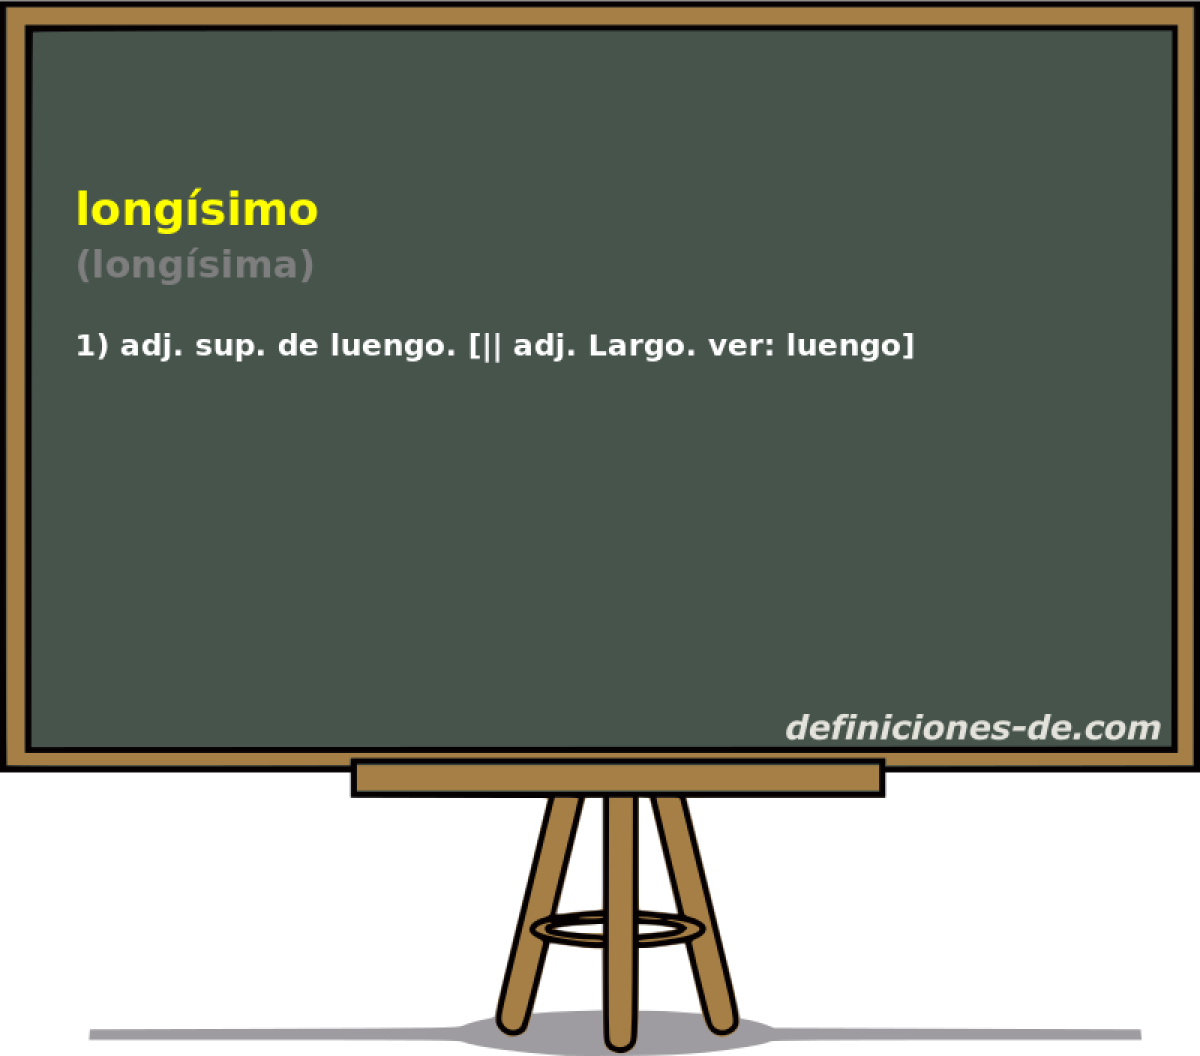 longsimo (longsima)